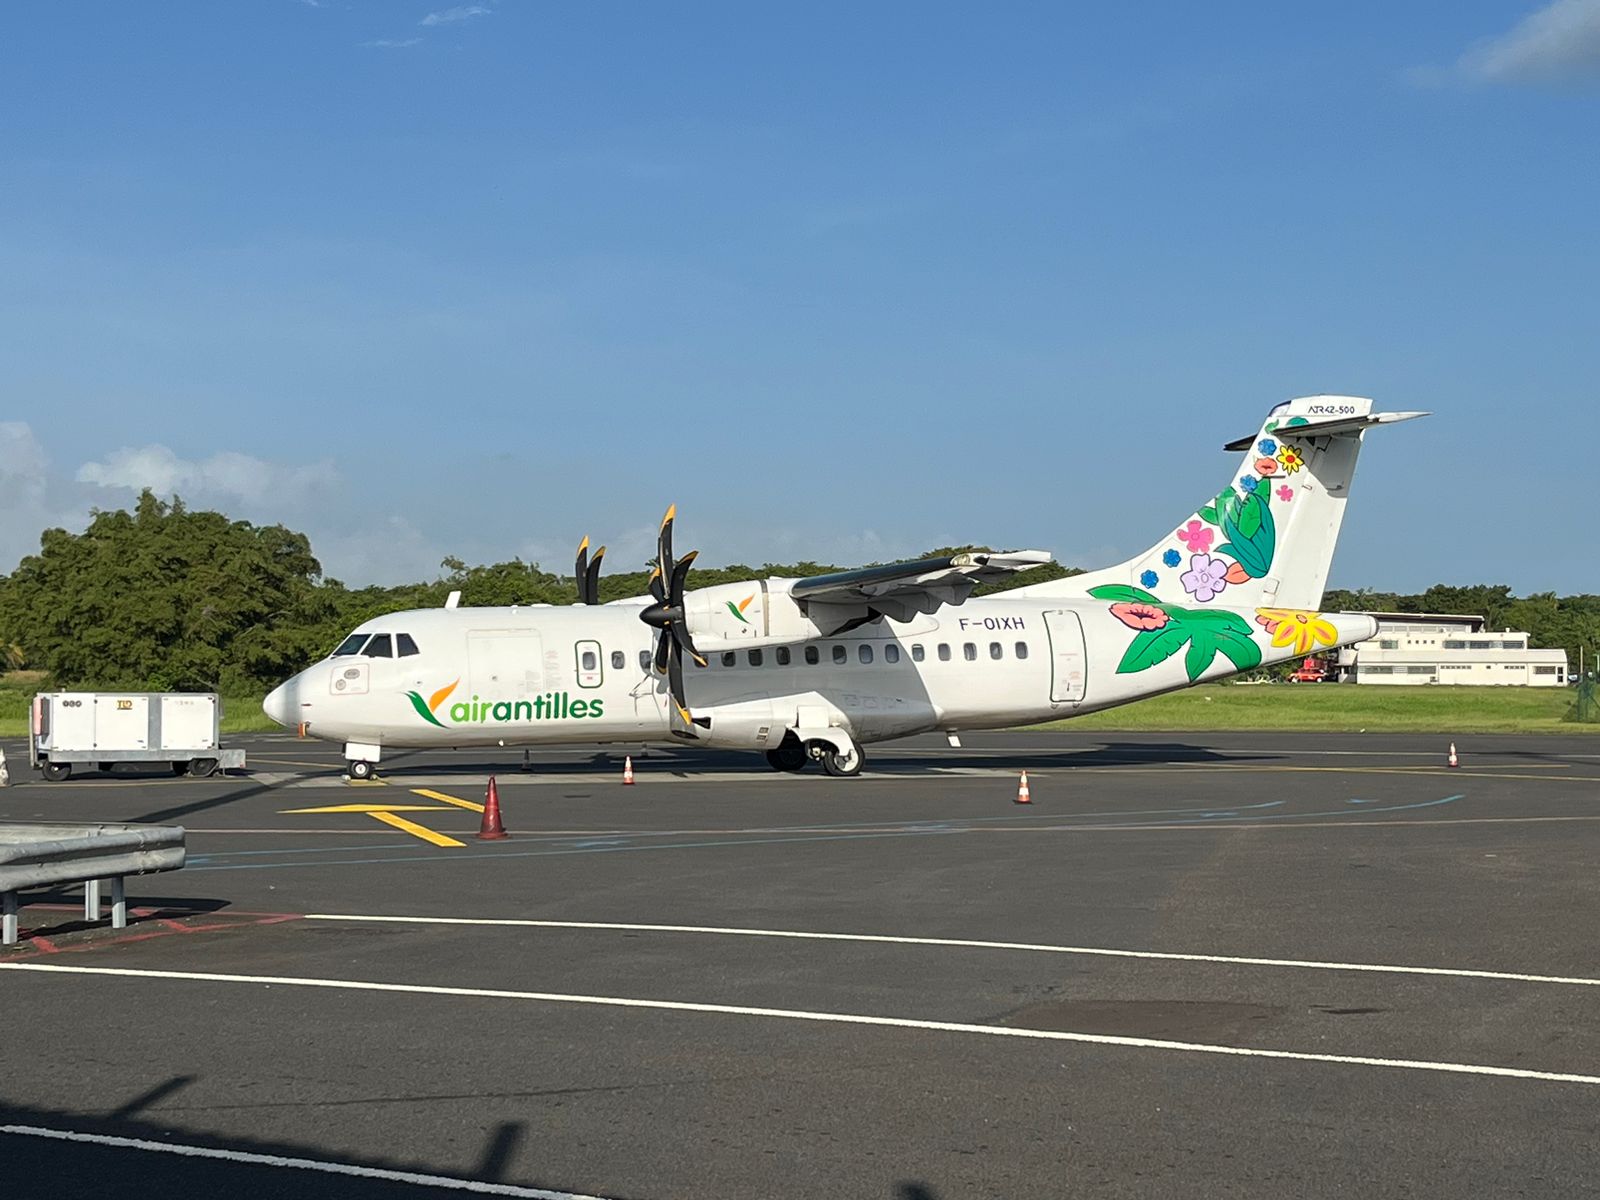     Une trentaine de « marques d’intérêt » pour la reprise d'Air Antilles

